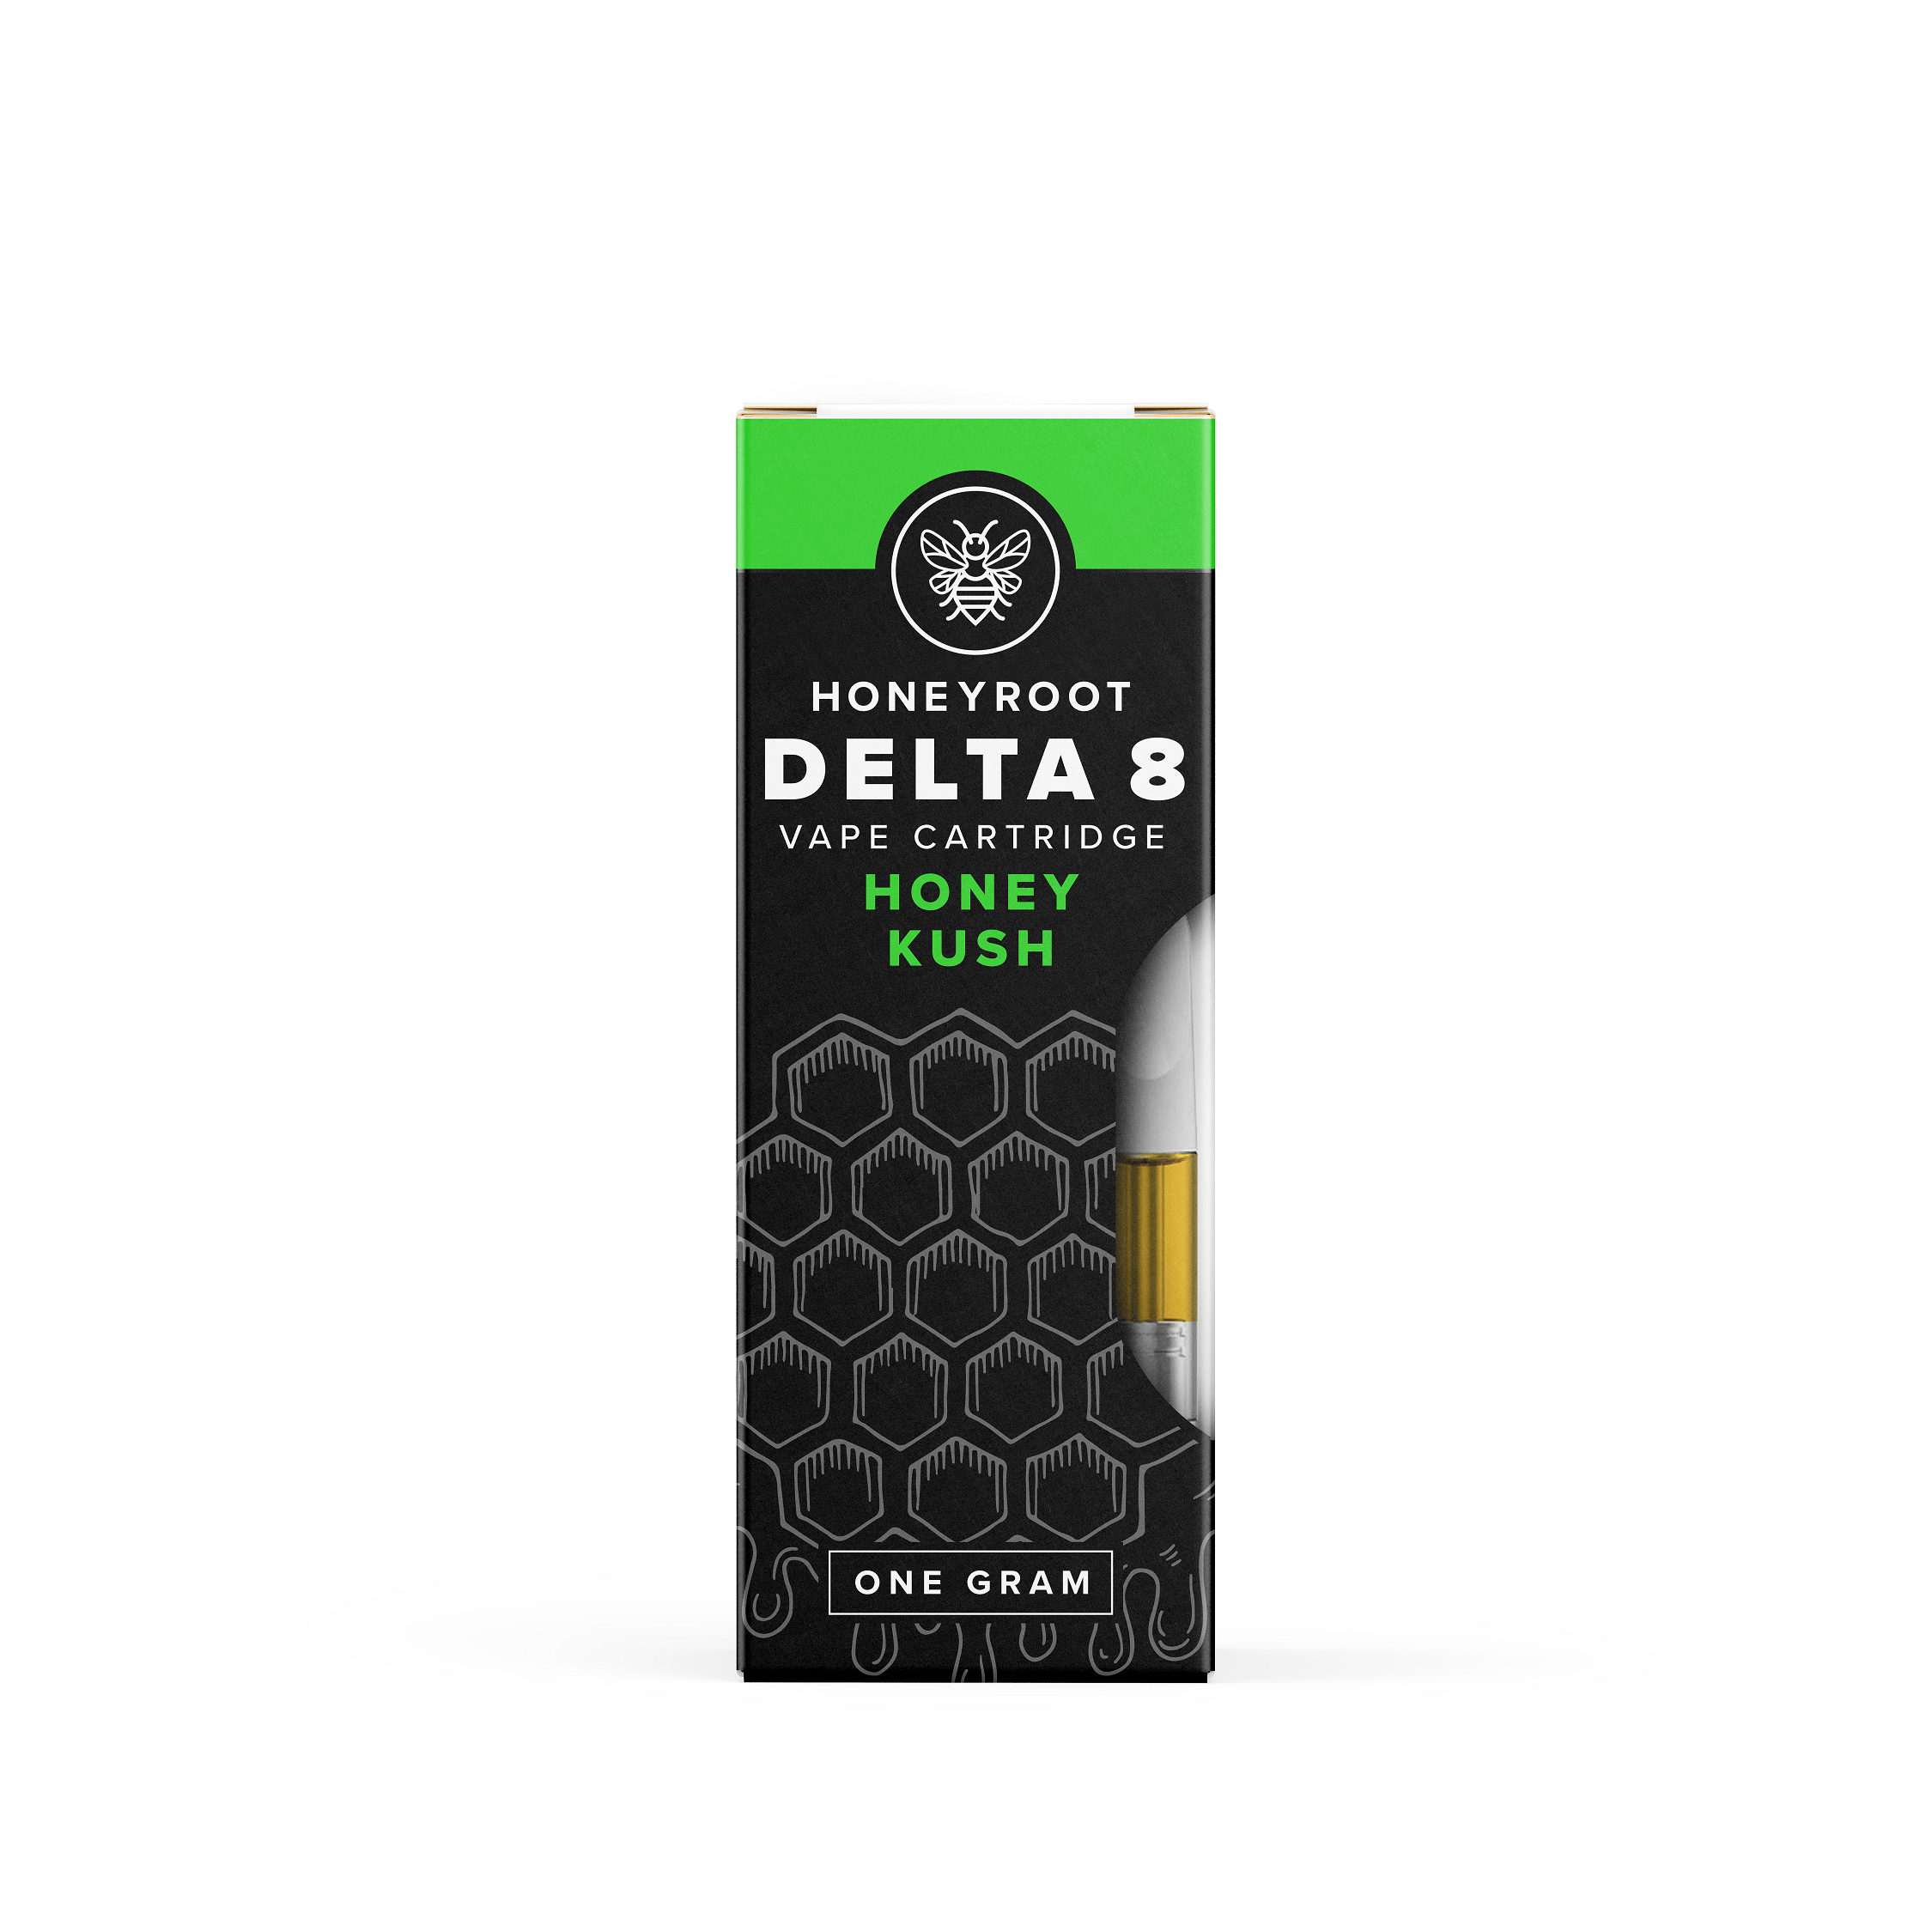 Delta-8 Cartridge